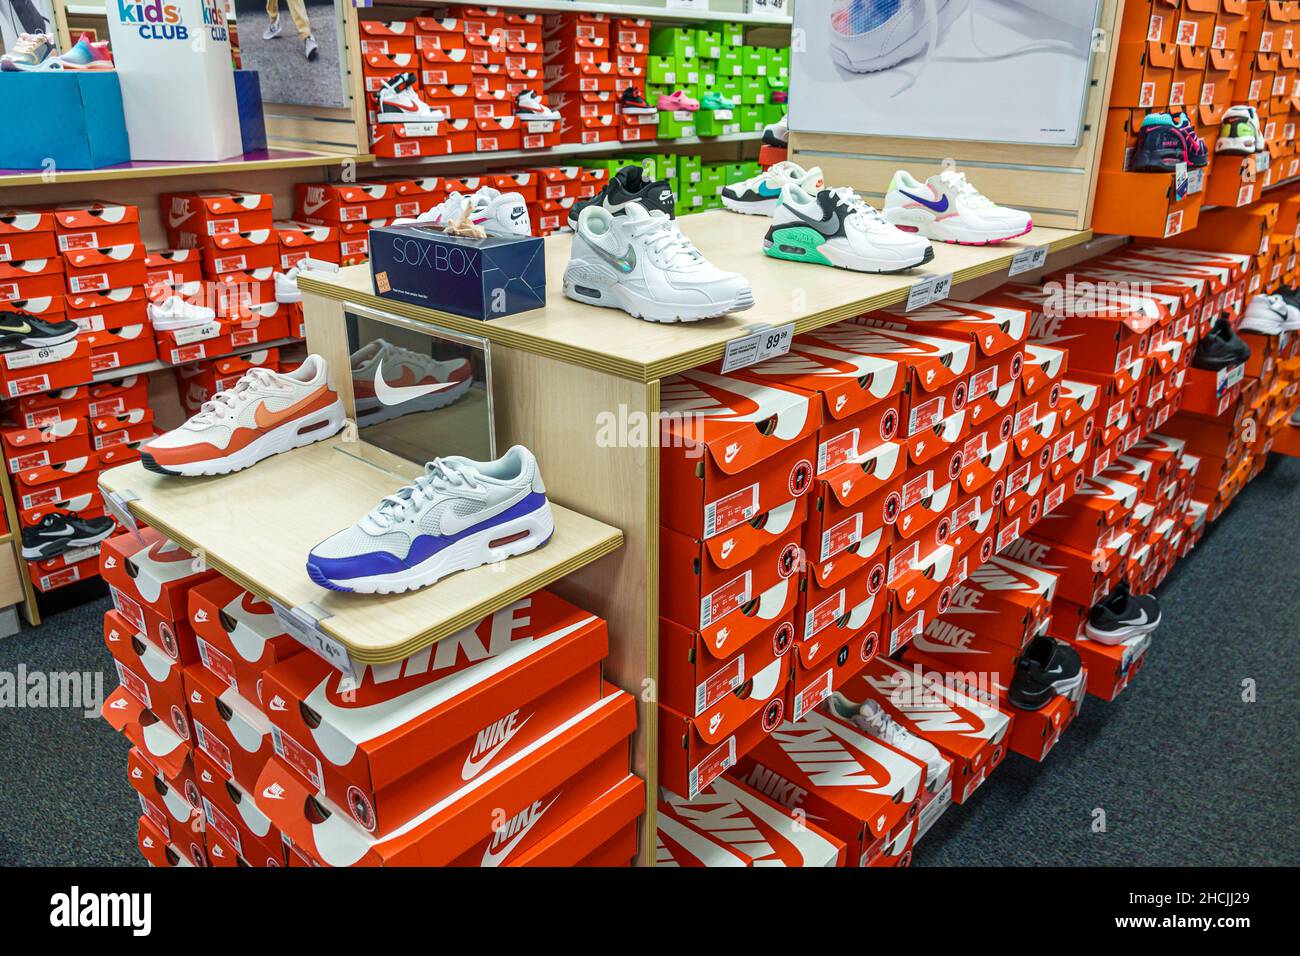 Nike factory store e imágenes de resolución Página 2 - Alamy